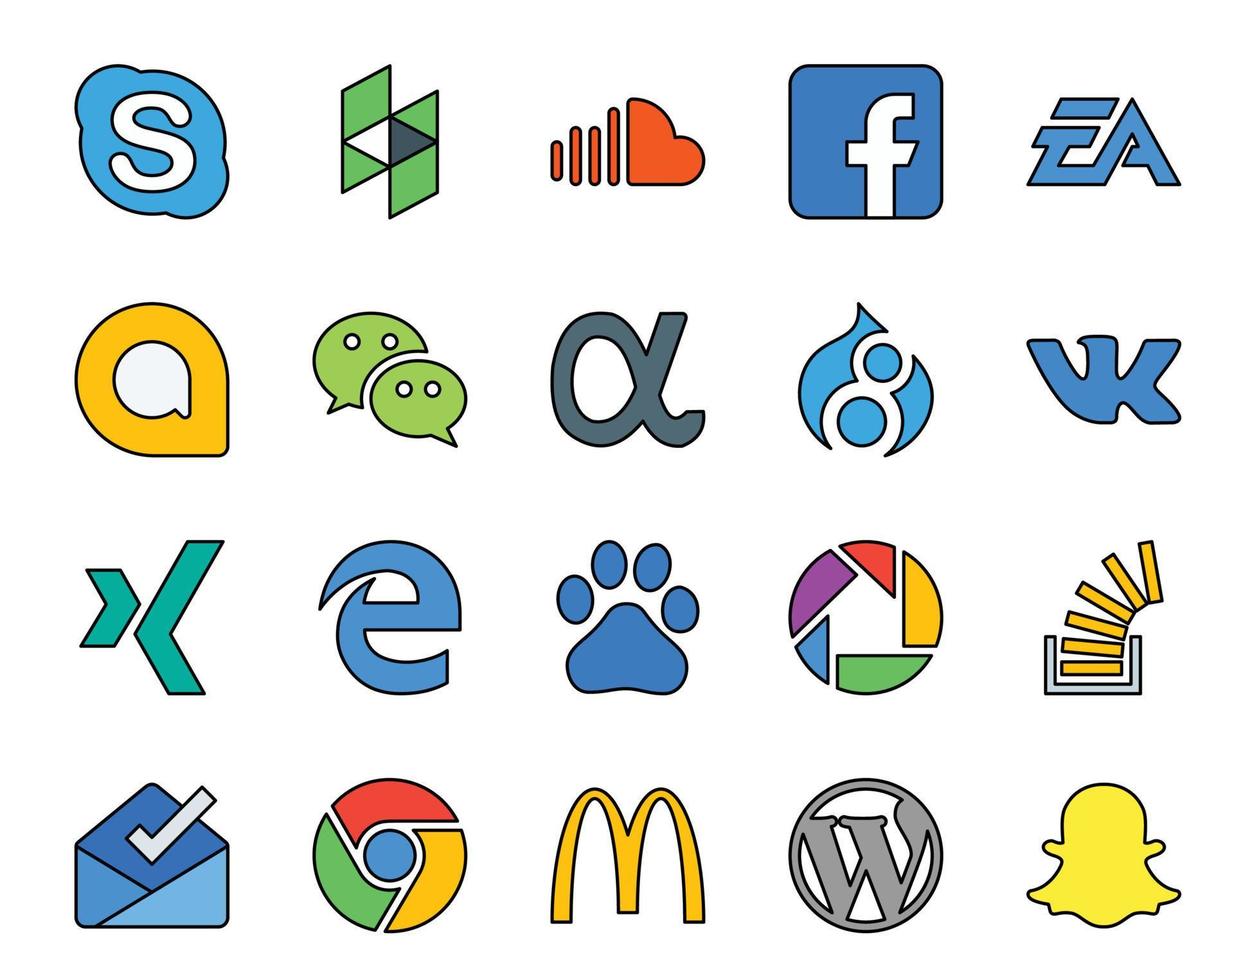 20 Social Media Icon Pack Including edge vk ea drupal messenger vector